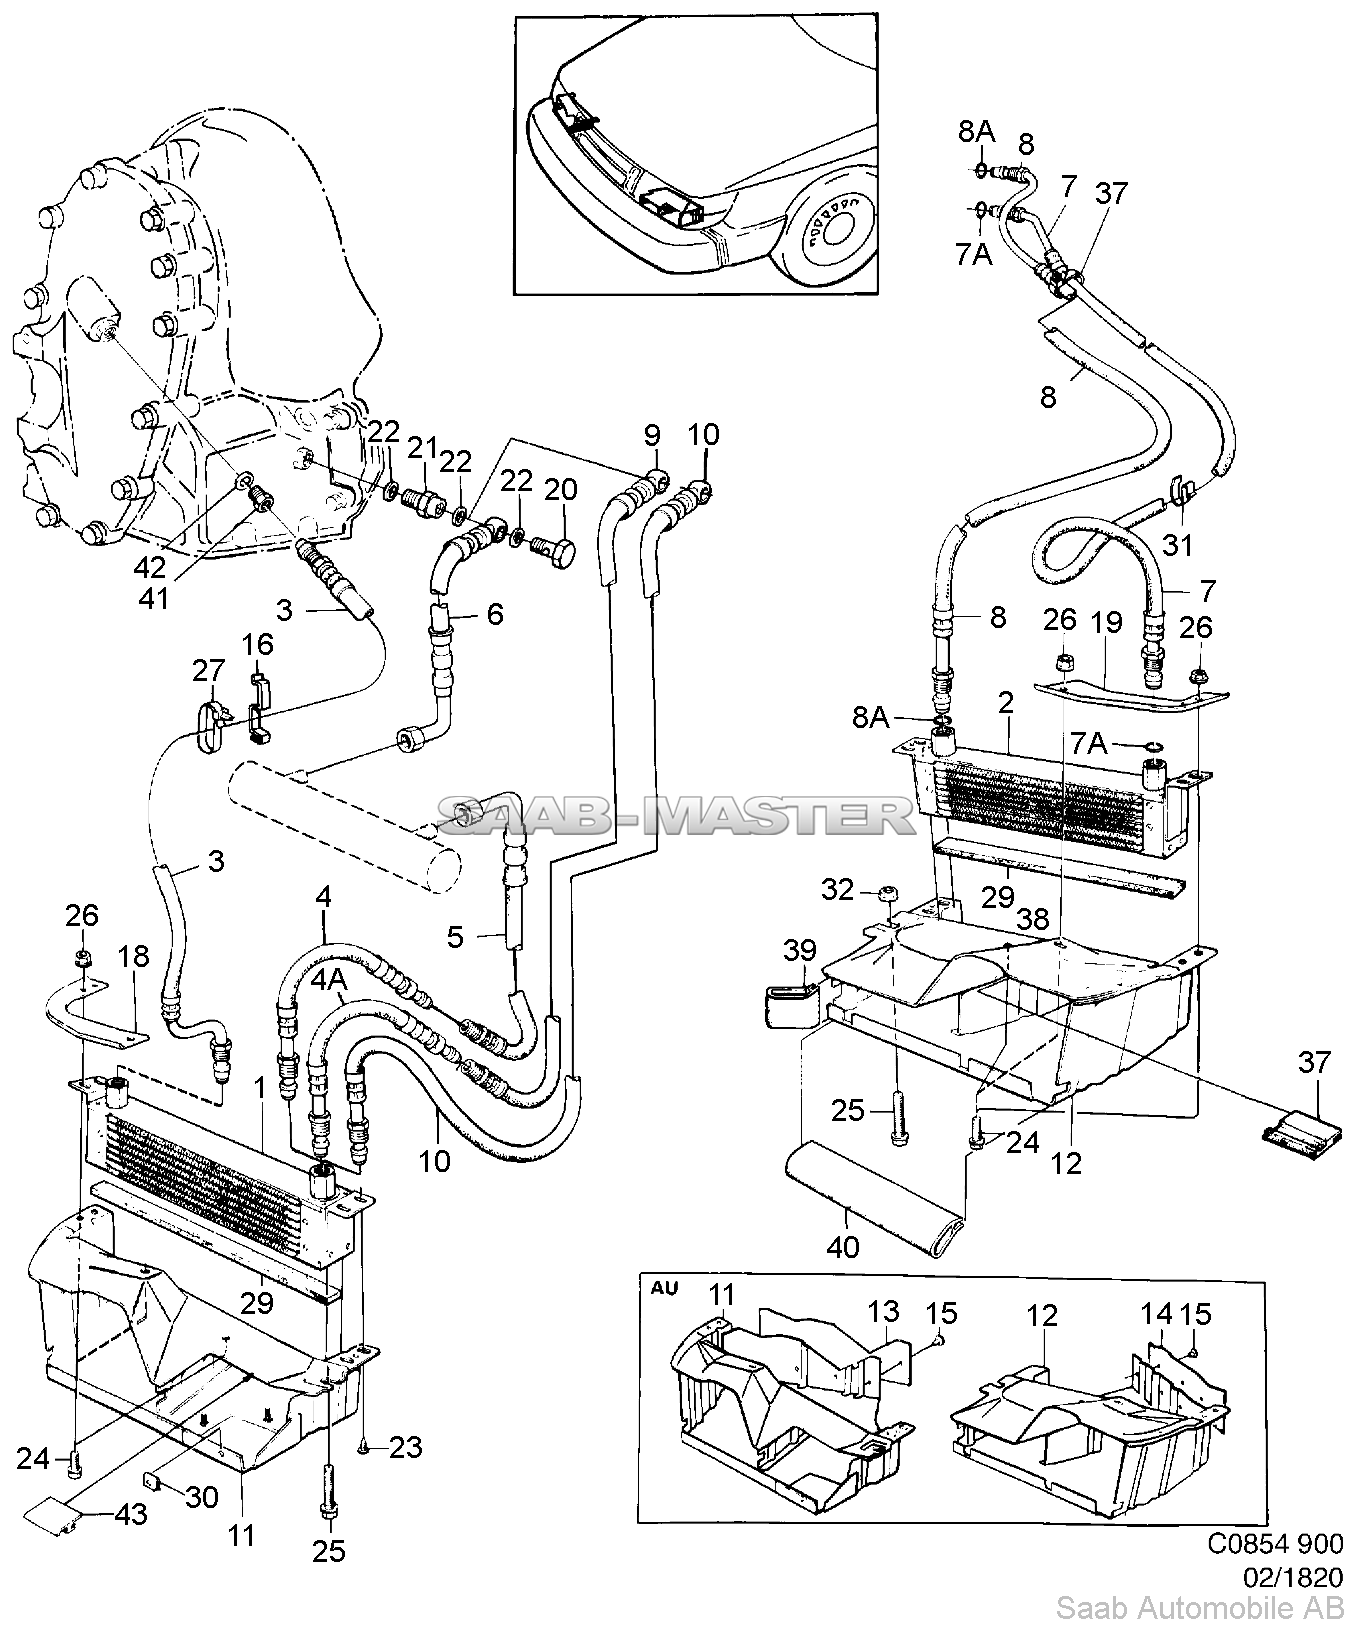 Воздушный охладитель масла - Двигатель и автоматическая коробка передач   Касается также Кабриолет 1994